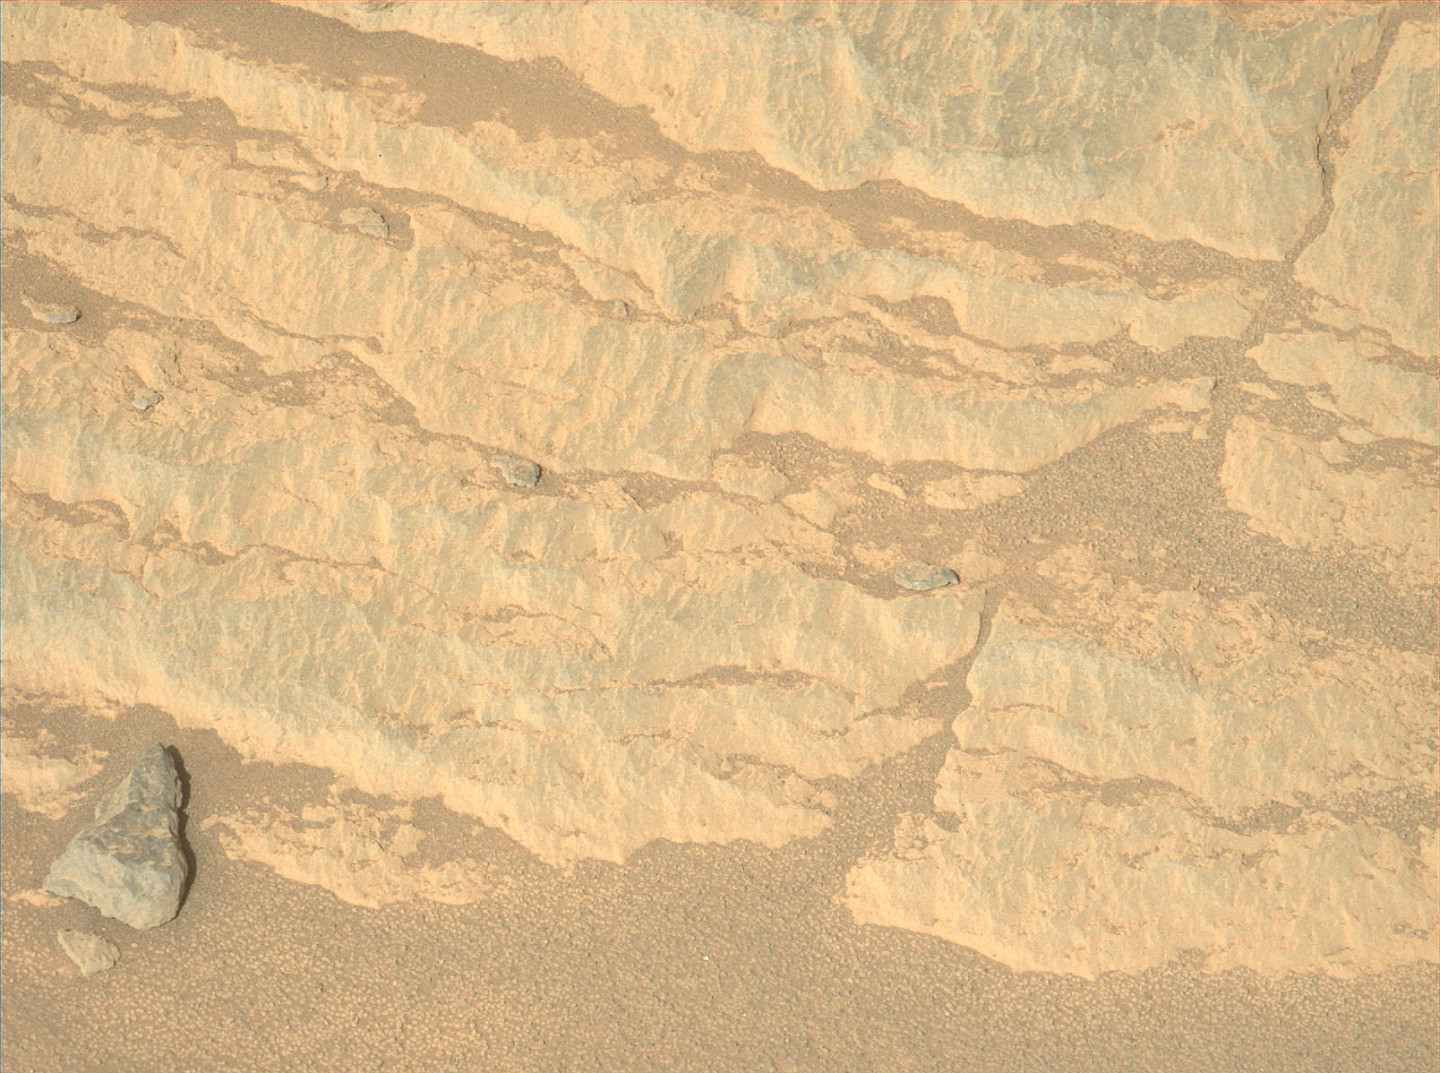 一个分层岩石被NASA视为潜在的火星岩石样本采样点 - 3